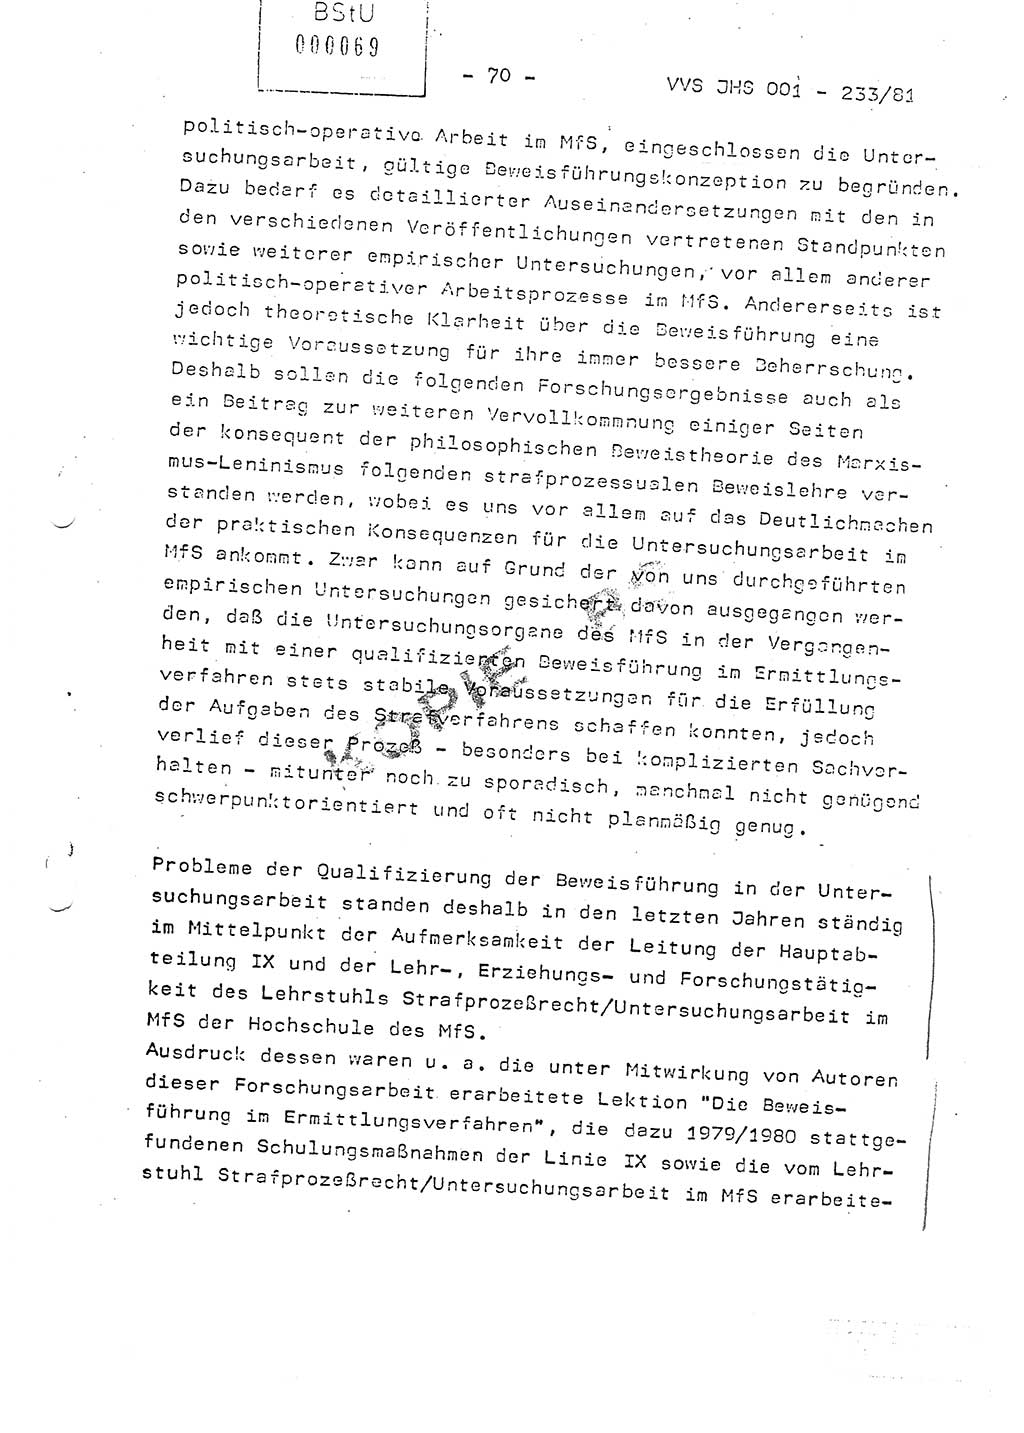 Dissertation Oberstleutnant Horst Zank (JHS), Oberstleutnant Dr. Karl-Heinz Knoblauch (JHS), Oberstleutnant Gustav-Adolf Kowalewski (HA Ⅸ), Oberstleutnant Wolfgang Plötner (HA Ⅸ), Ministerium für Staatssicherheit (MfS) [Deutsche Demokratische Republik (DDR)], Juristische Hochschule (JHS), Vertrauliche Verschlußsache (VVS) o001-233/81, Potsdam 1981, Blatt 70 (Diss. MfS DDR JHS VVS o001-233/81 1981, Bl. 70)